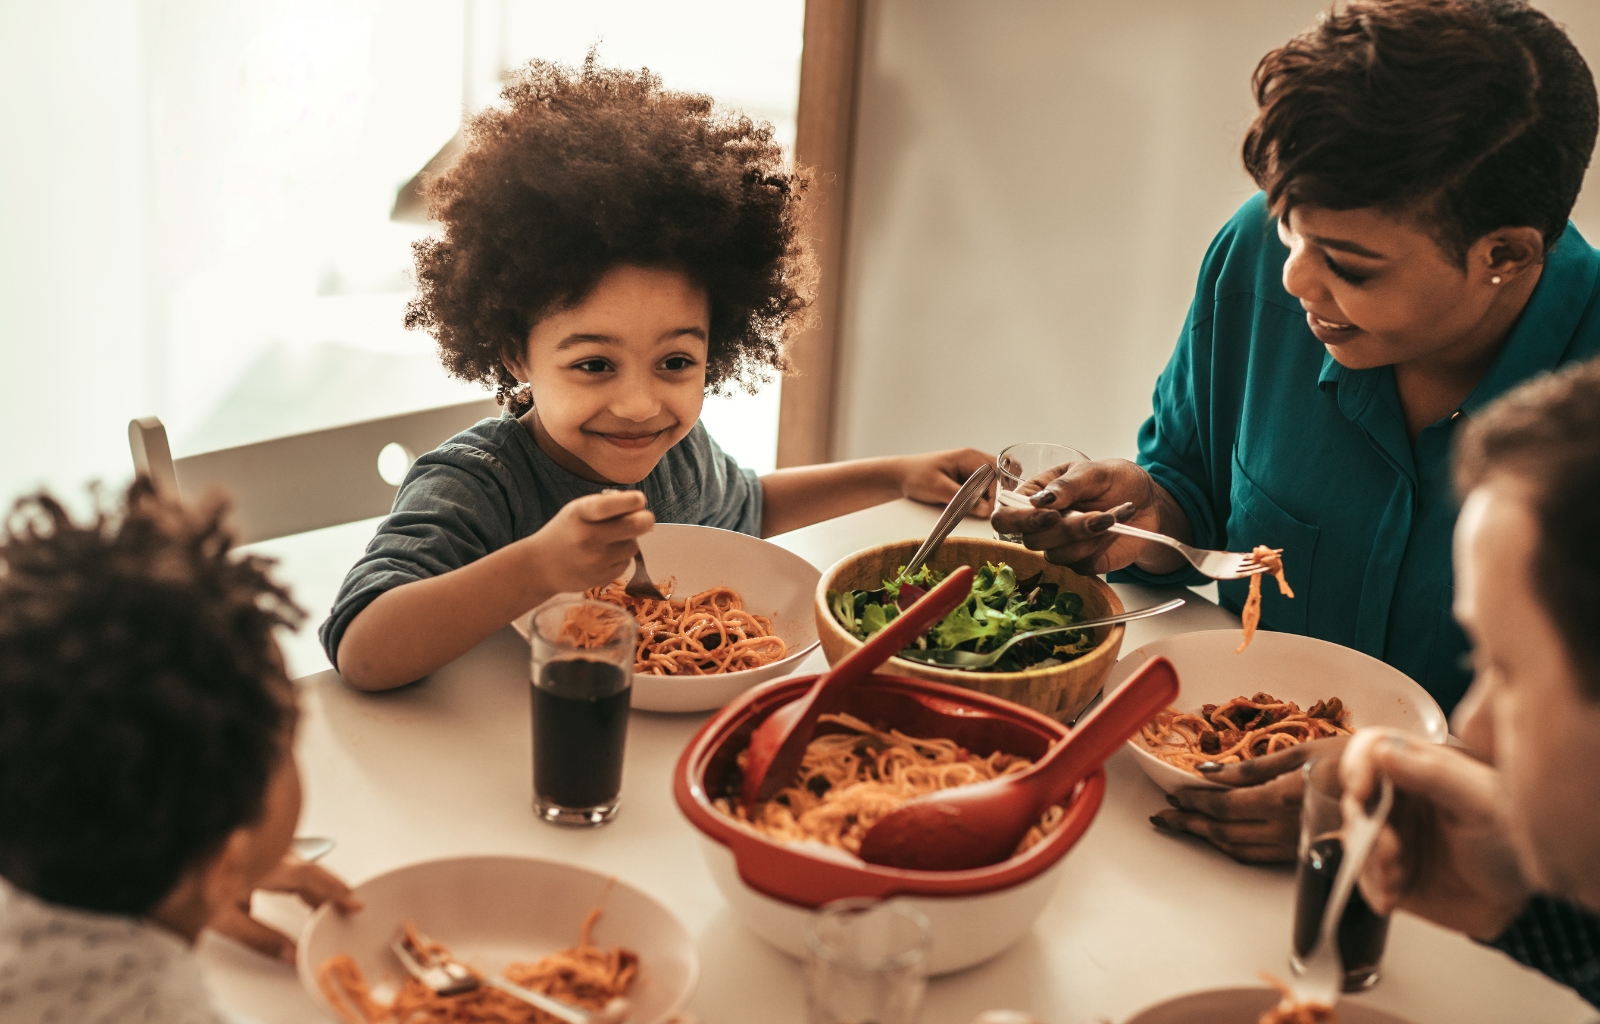 Alimentação Saudável Infantil: a importância da interação dos pais